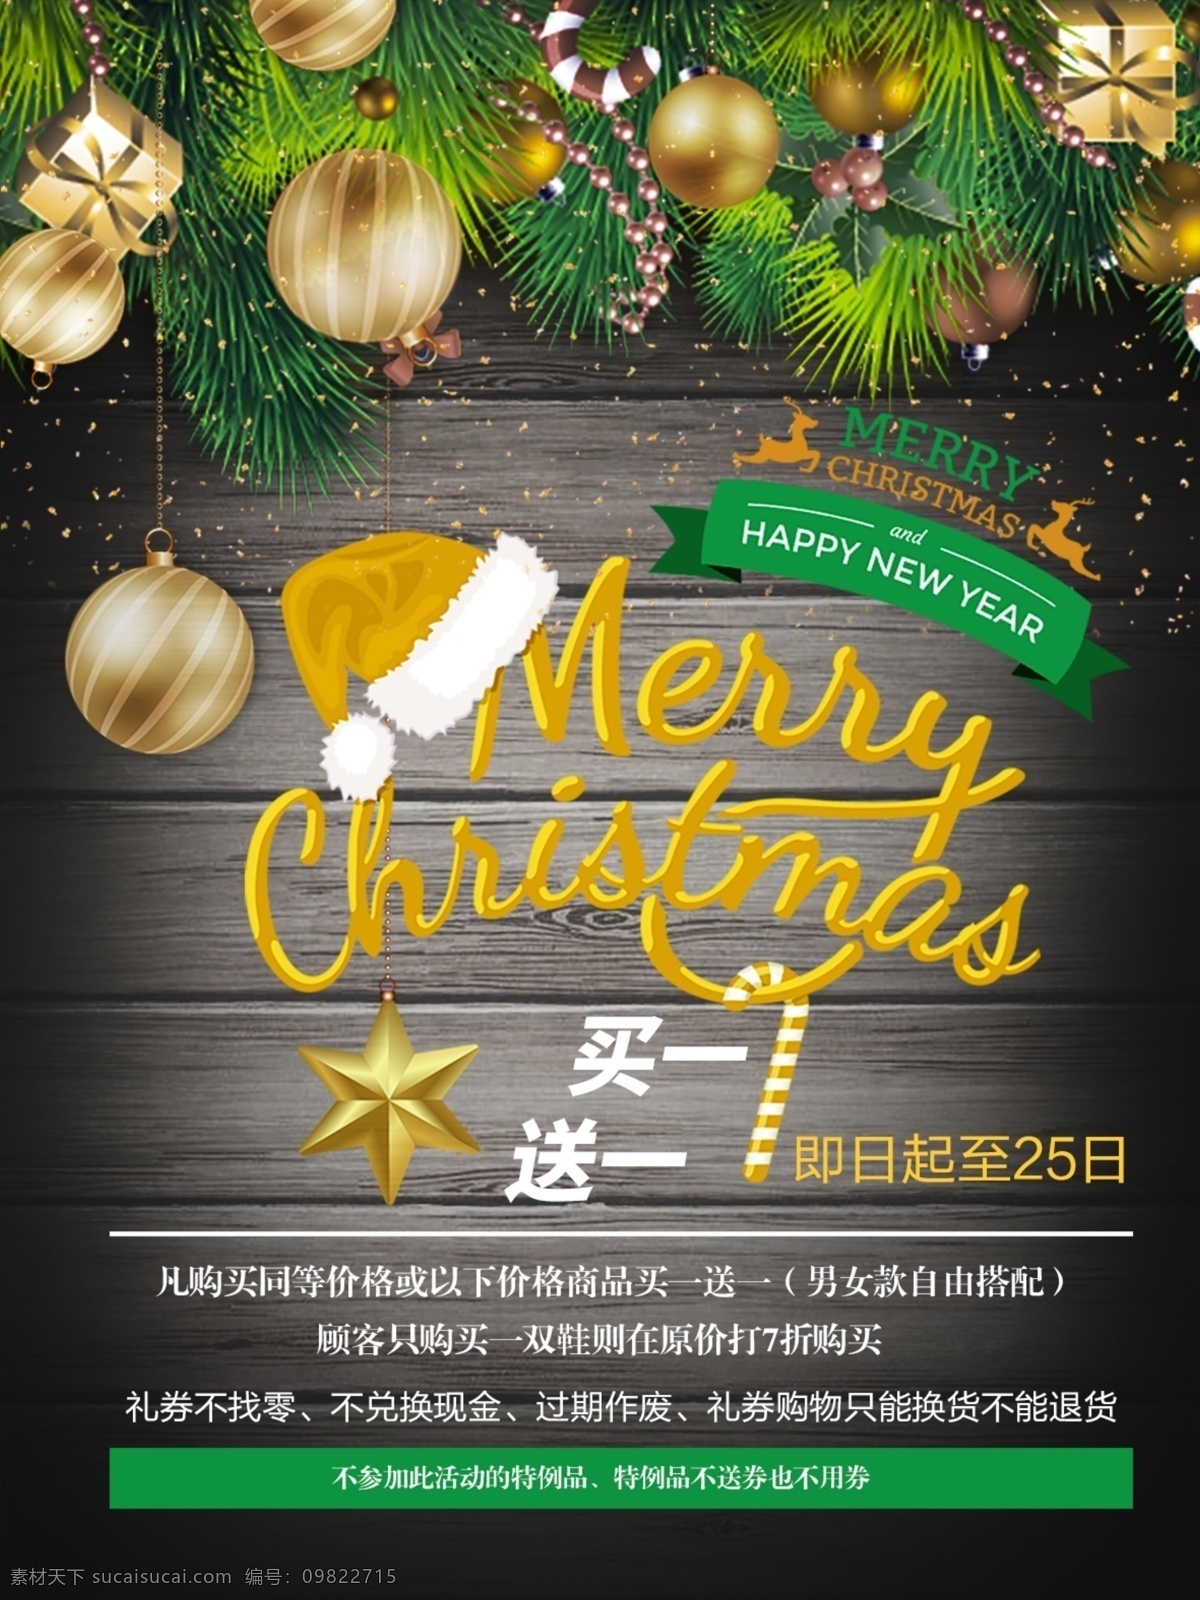 金色 绿色 圣诞 促销 海报 金色绿色 圣诞促销海报 金色圣诞海报 灰色木板 绿色圣诞